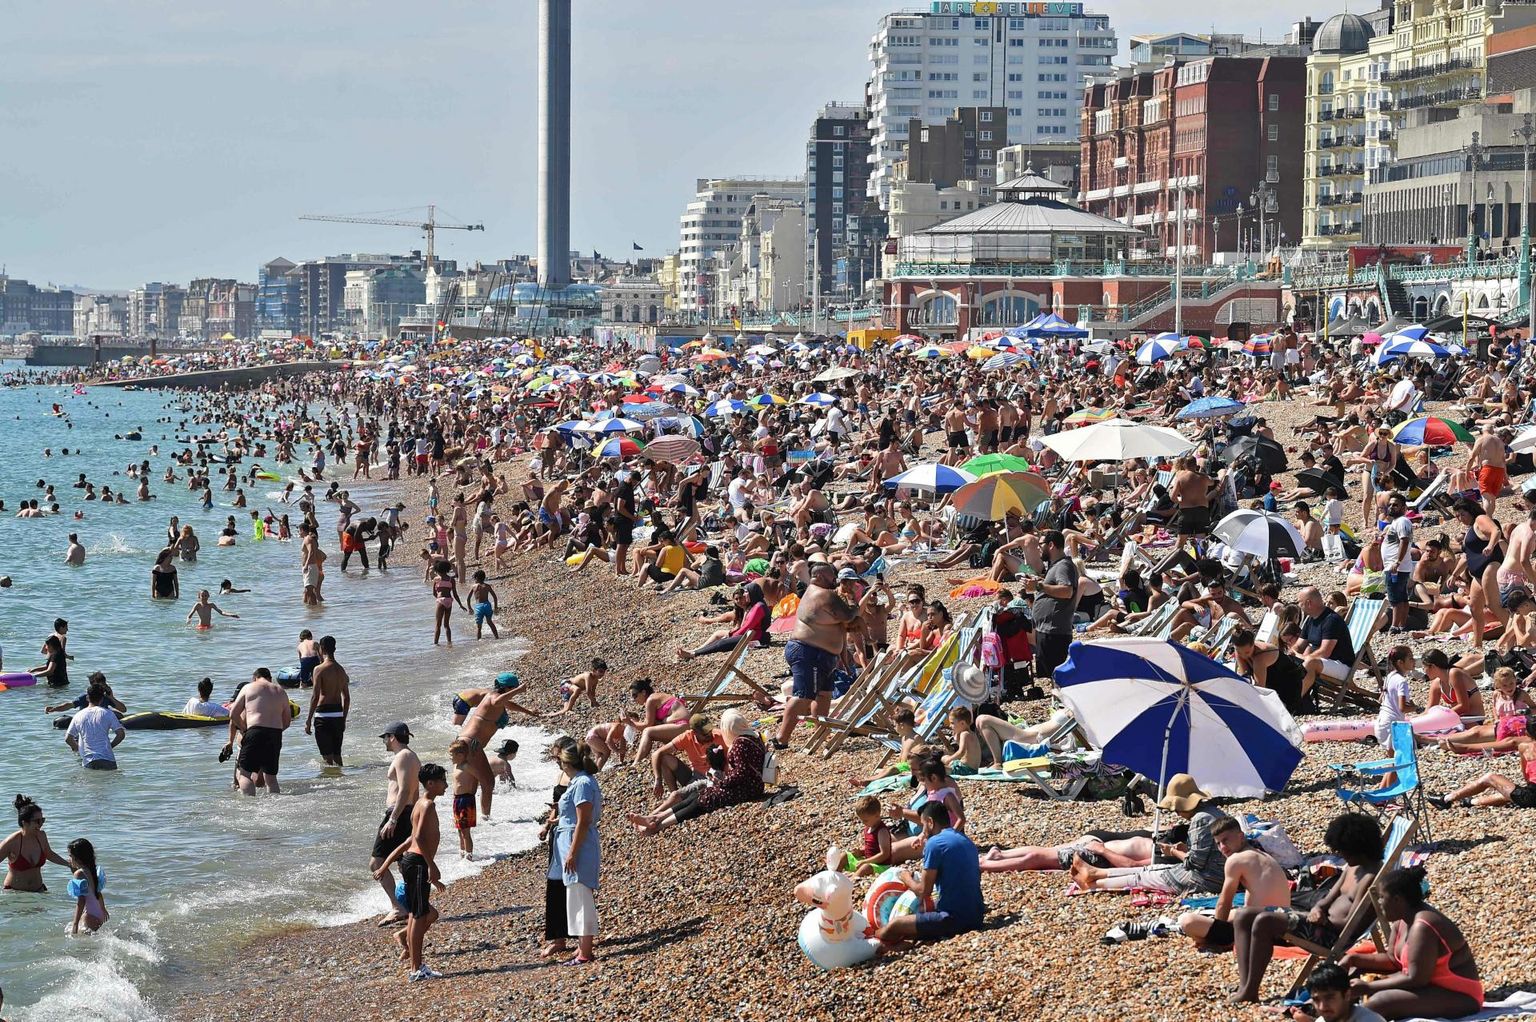 Kui temperatuur suvel tõuseb, on mõnus seltskonnaga randa minna. Kui temperatuur ja rahvahulk kasvavad liiga palju, pole enam üldse mõnus. Inimesed kuumalaine ajal Brightoni rannas.